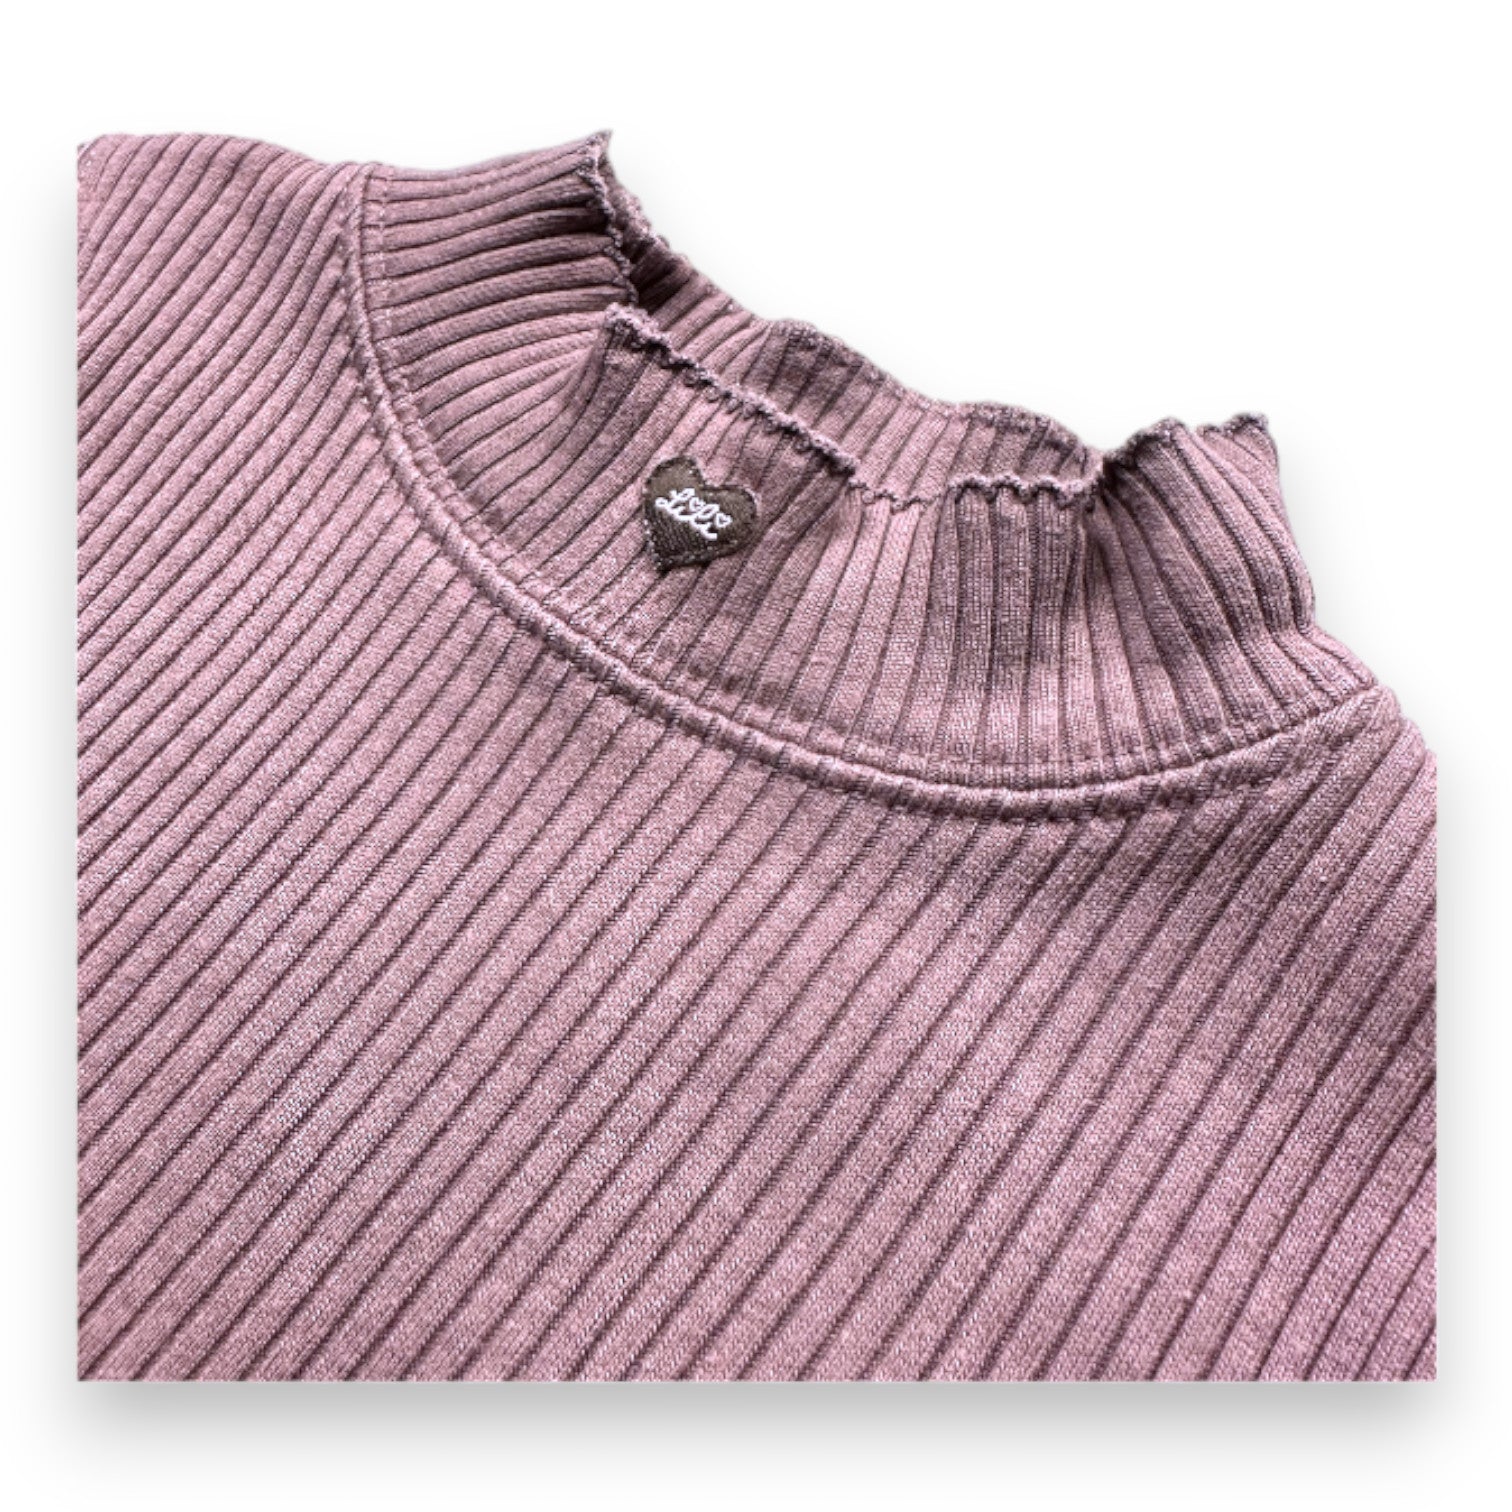 LILI GAUFRETTE - t-shirt à manches longues violet - 2 ans